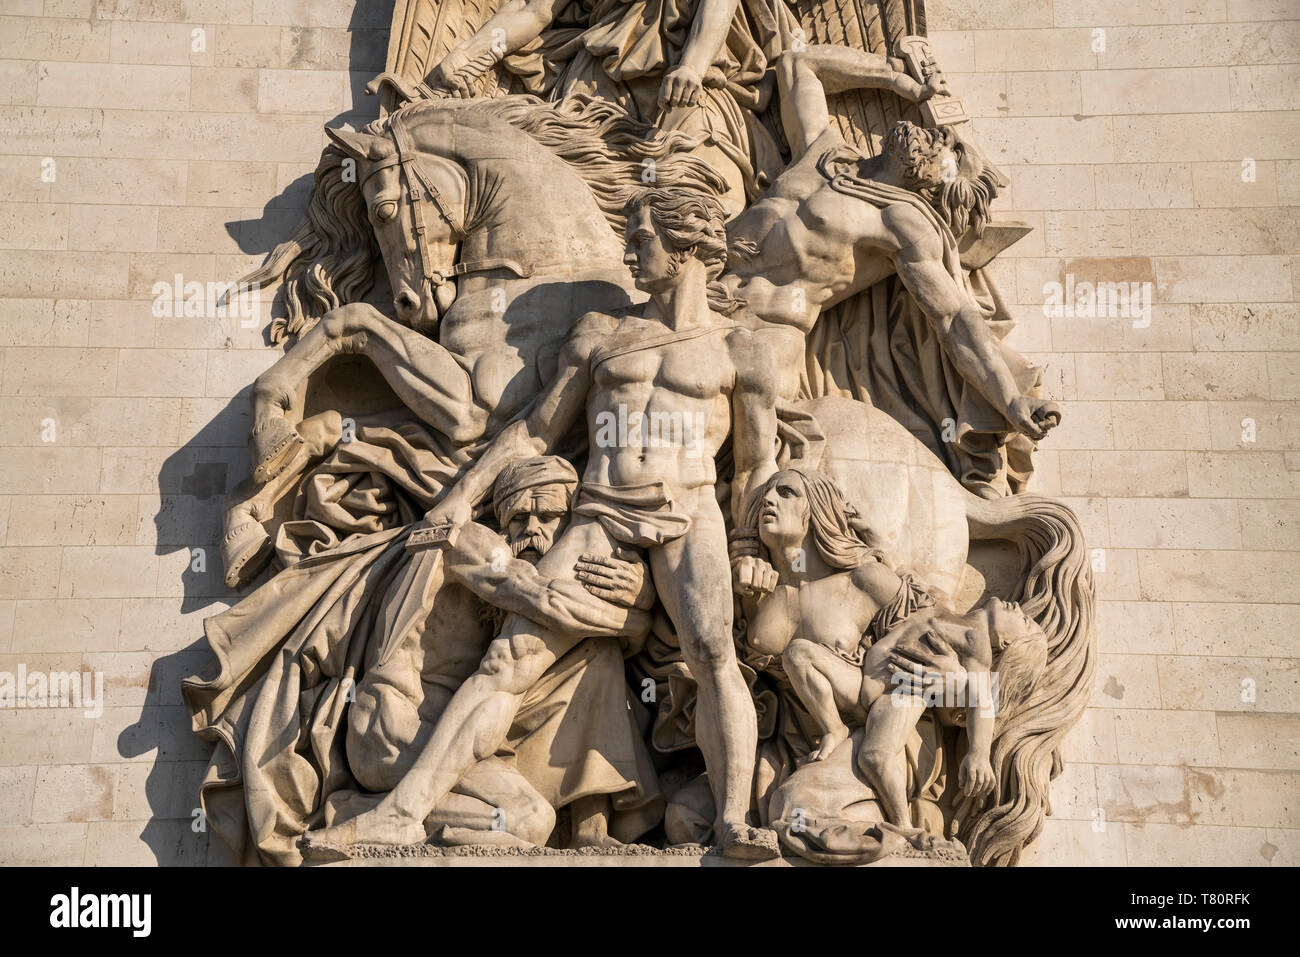 Relief Der Widerstand 1814 am Triumphbogen Arc de Triomphe, Paris, Frankreich  |  sculpture La Resistance de 1814 on triumphal arch Arc de Triomphe, P Stock Photo